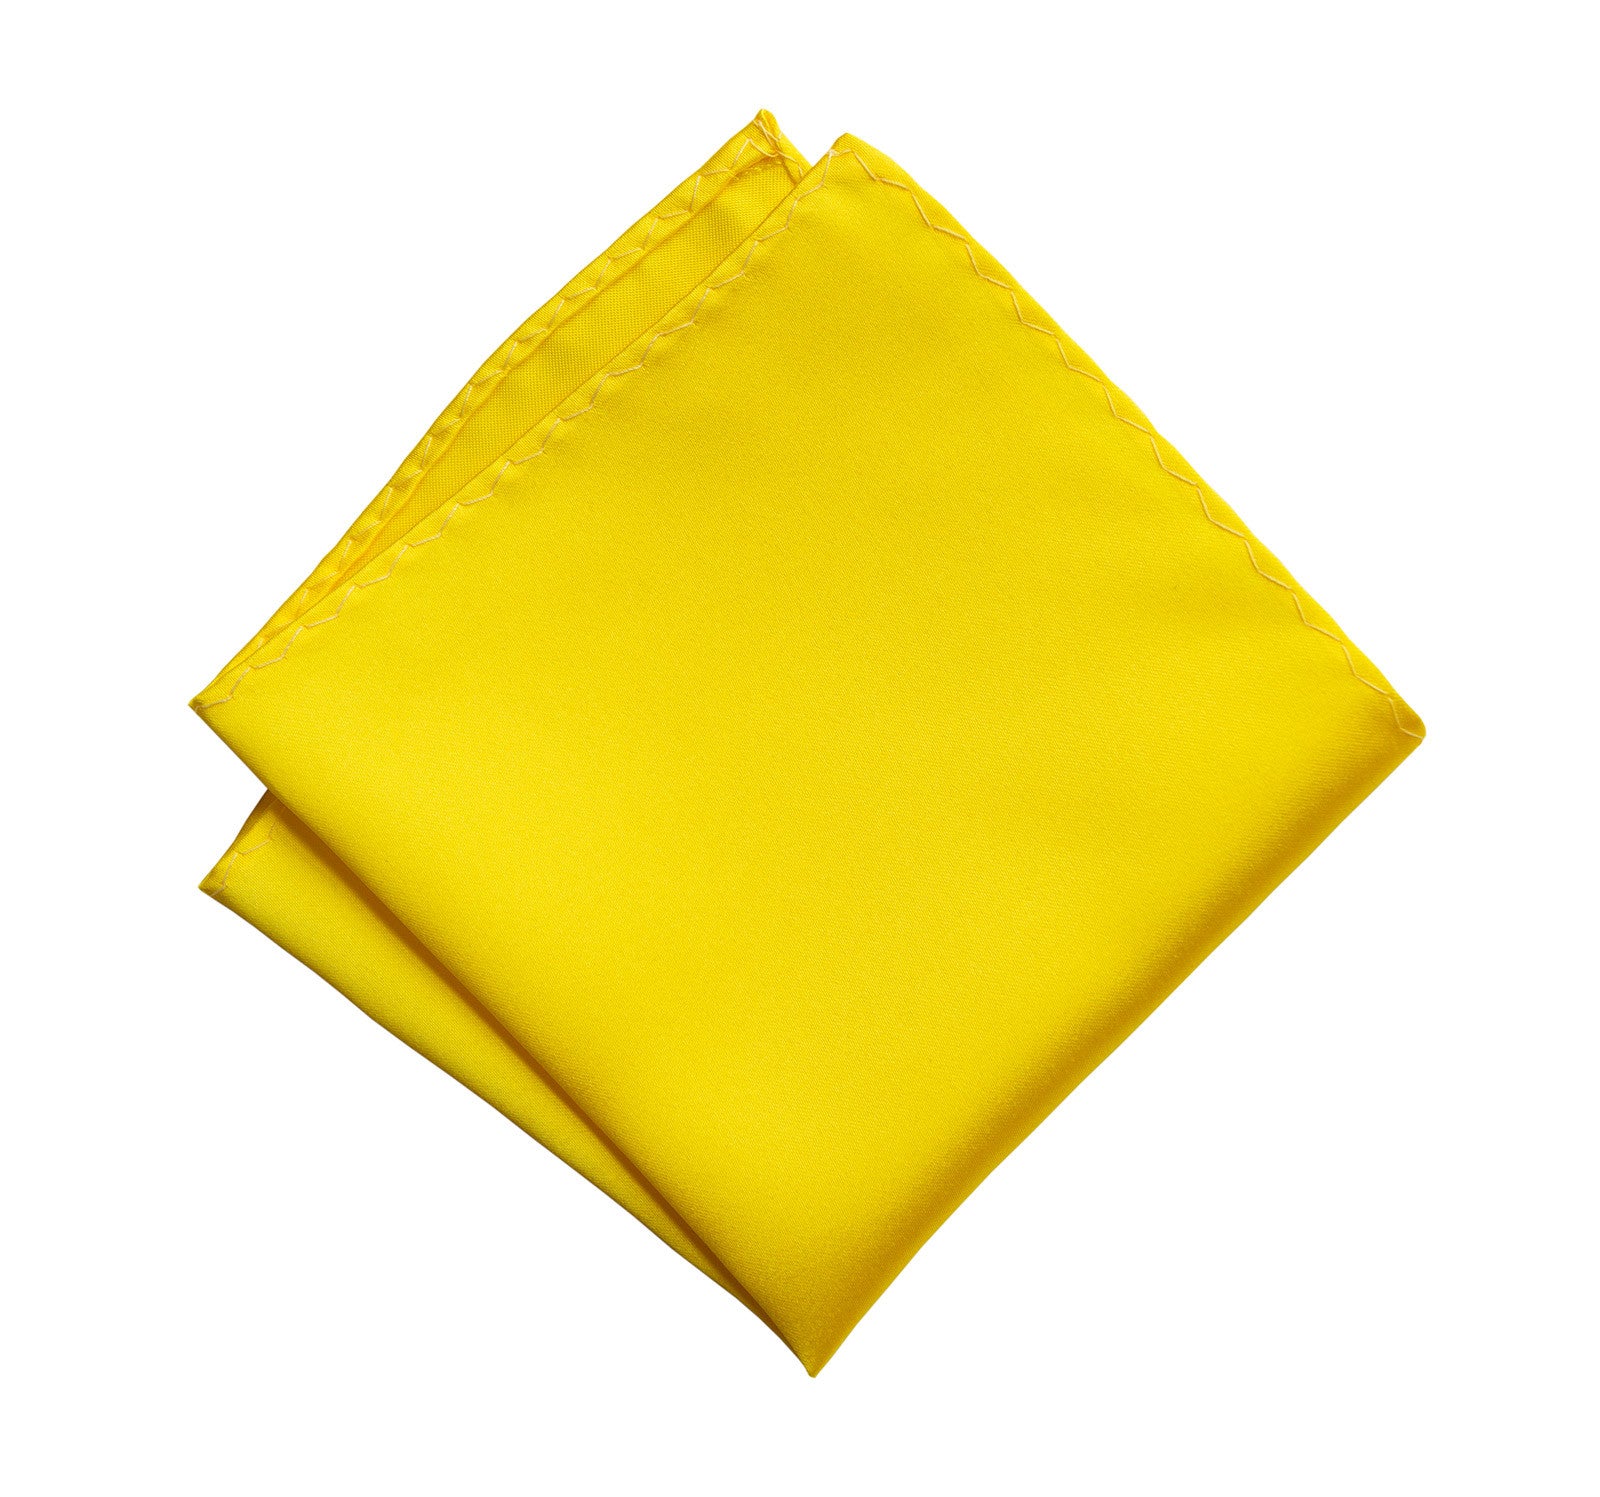 Roommates Lemon Zest Peel & Stick Yellow/Beige Wallpaper | DecoratorsBest